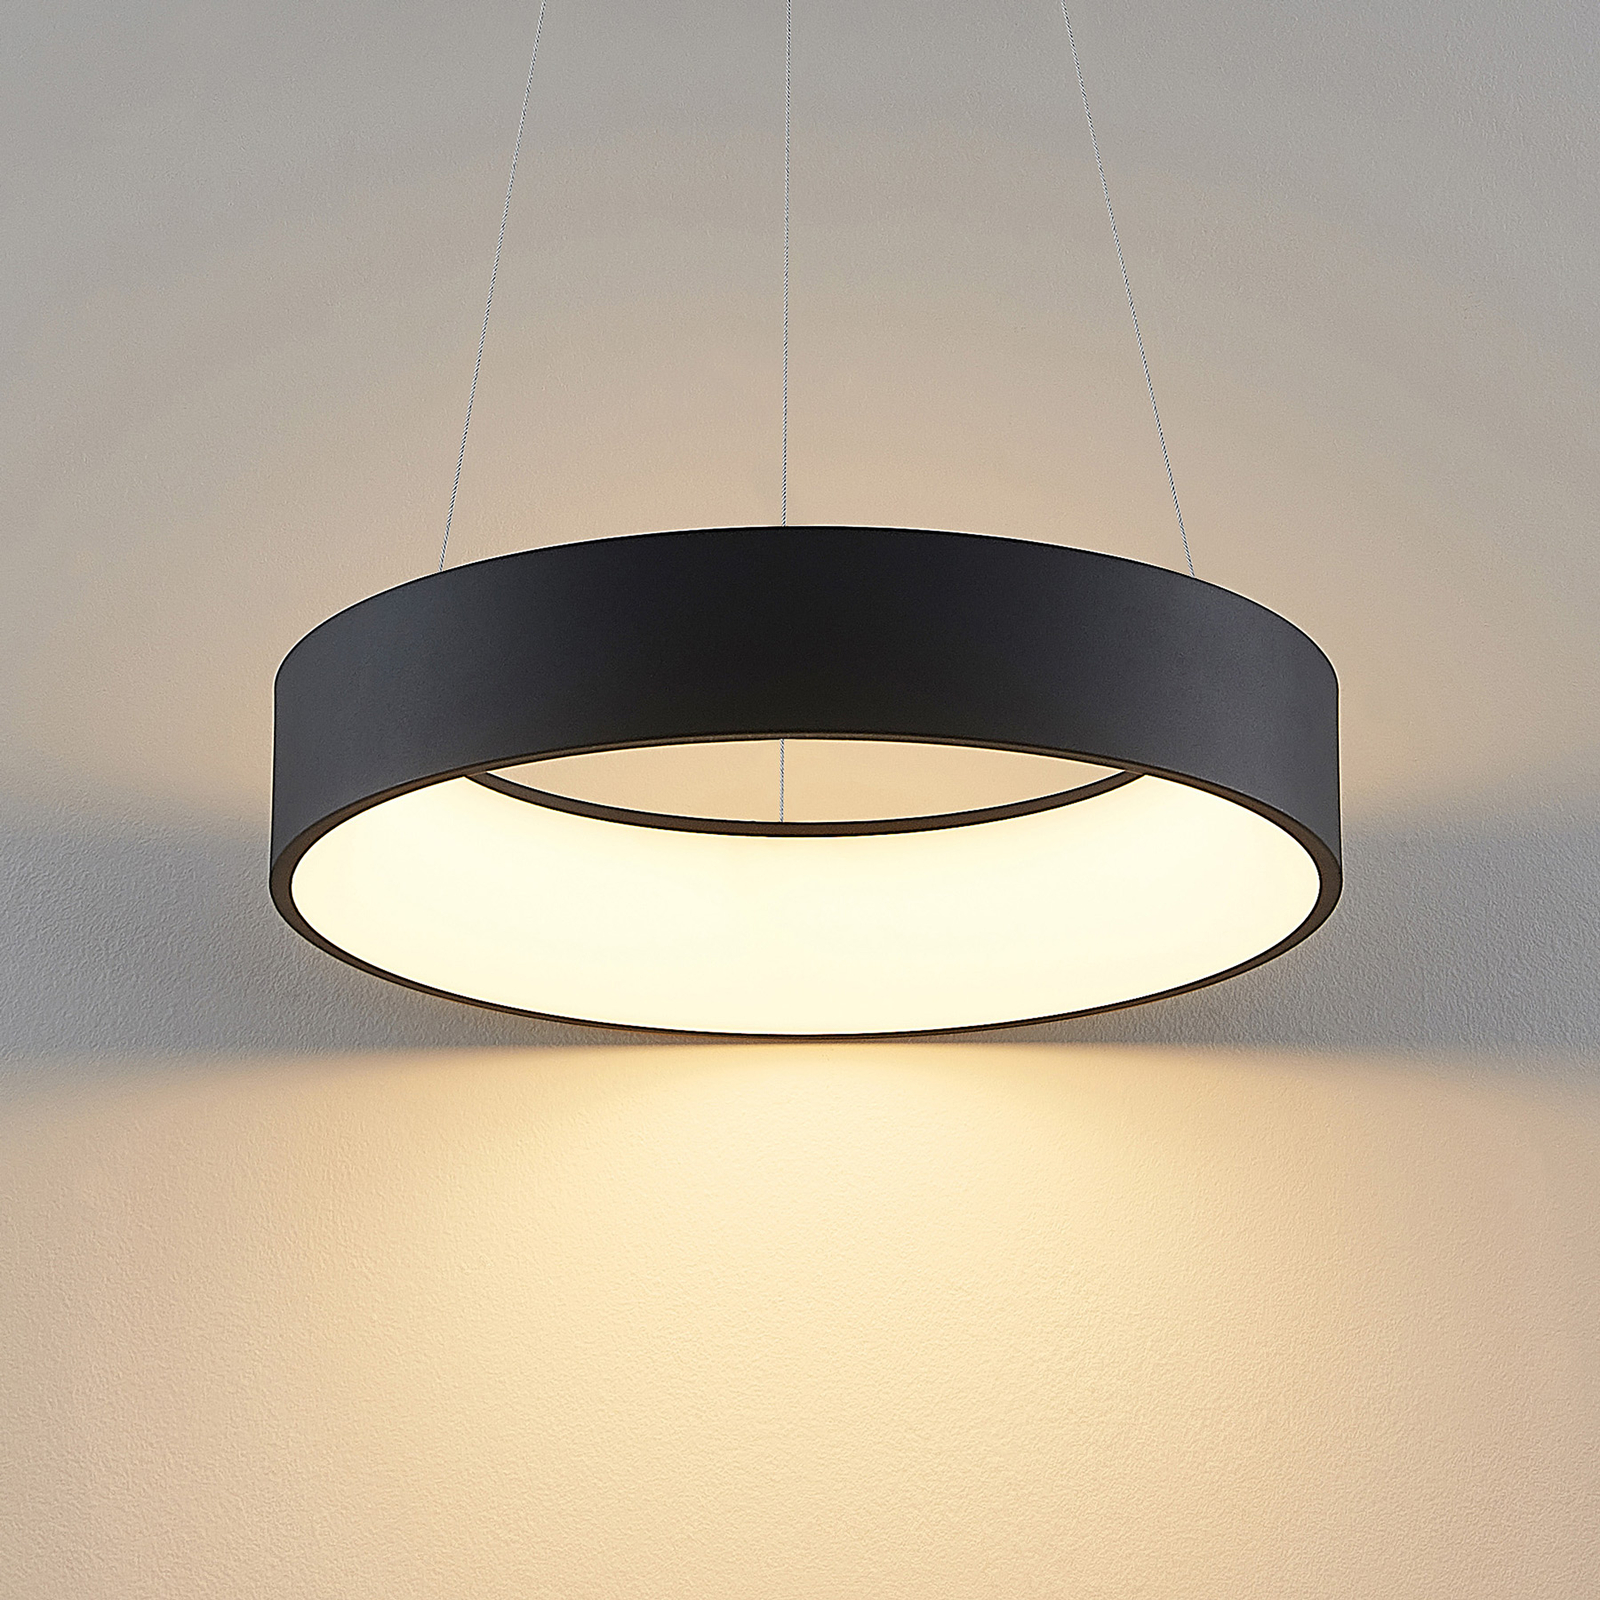 Arcchio Aleksi lampă LED, Ø 45 cm, rotundă